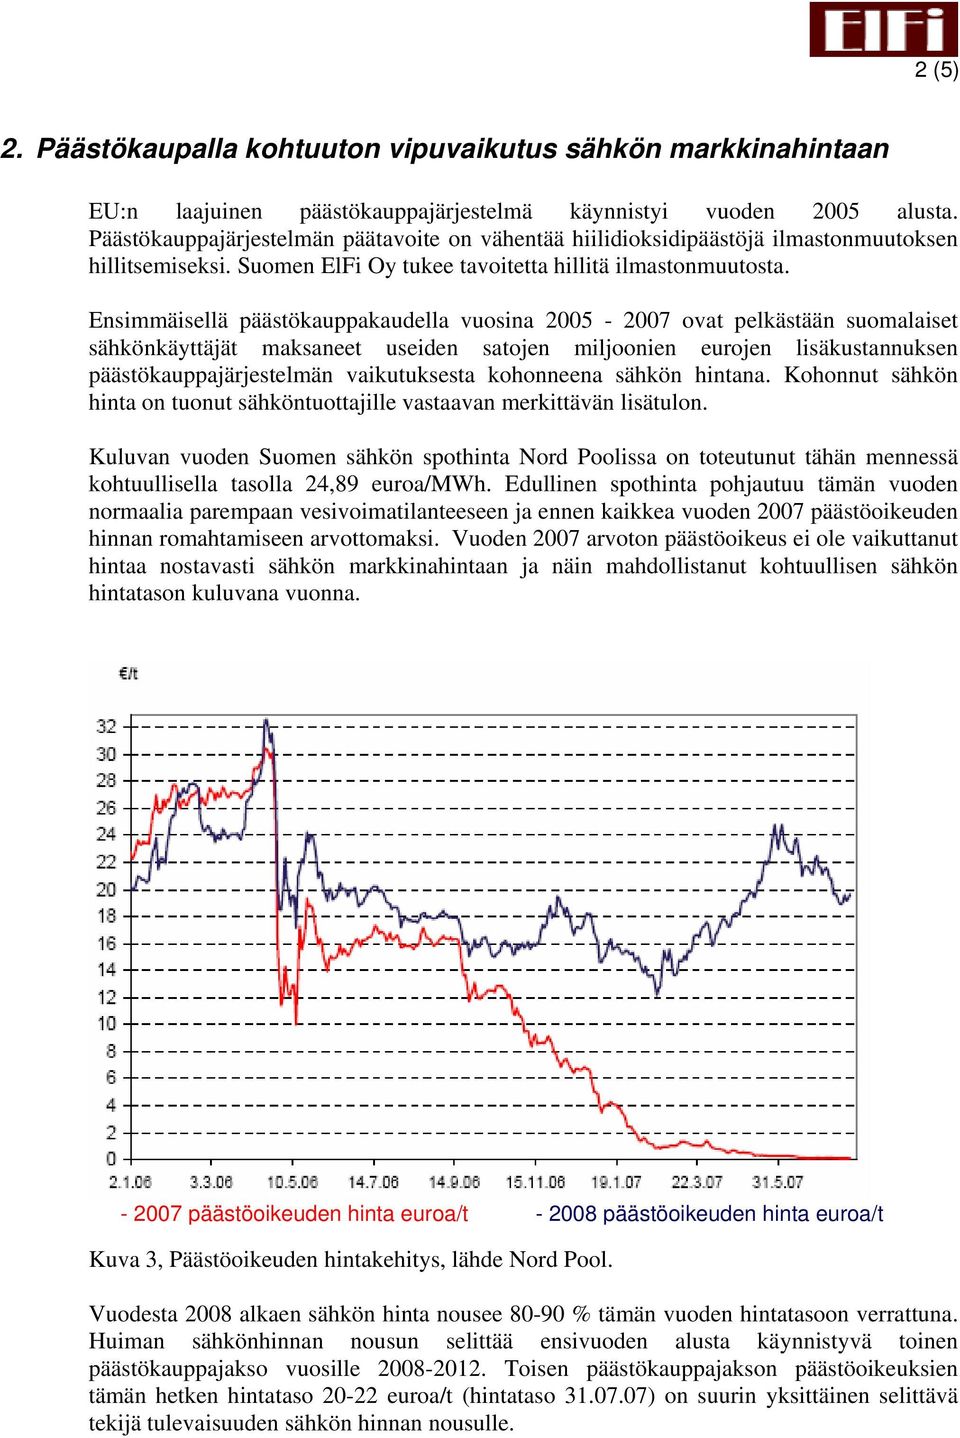 Ensimmäisellä päästökauppakaudella vuosina 2005-2007 ovat pelkästään suomalaiset sähkönkäyttäjät maksaneet useiden satojen miljoonien eurojen lisäkustannuksen päästökauppajärjestelmän vaikutuksesta